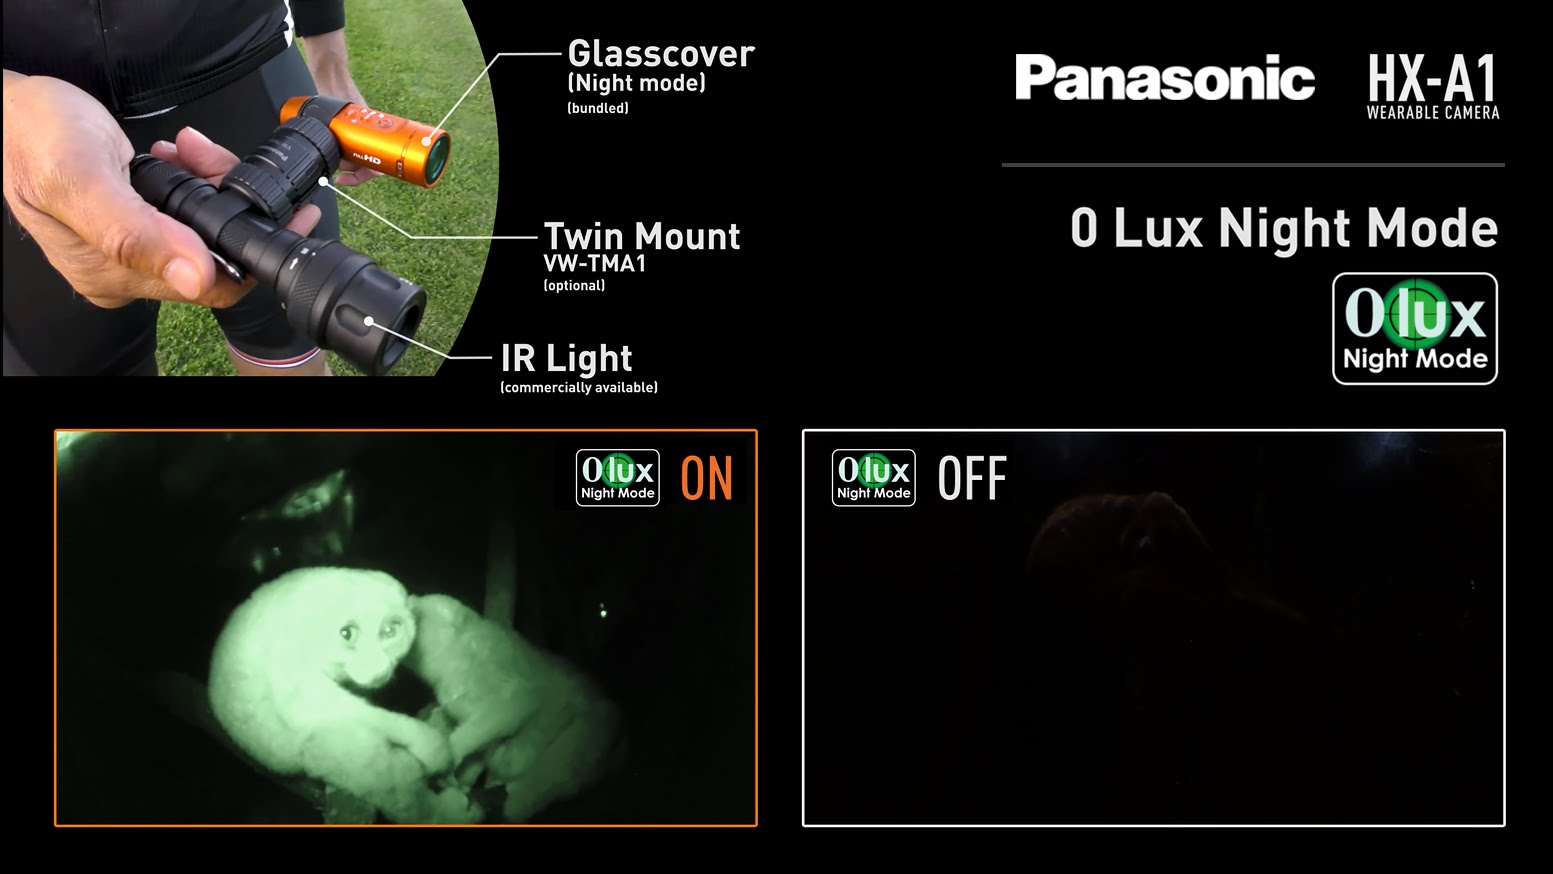 Panasonic’s New Wearable Camera HX-A1 | Night Mode